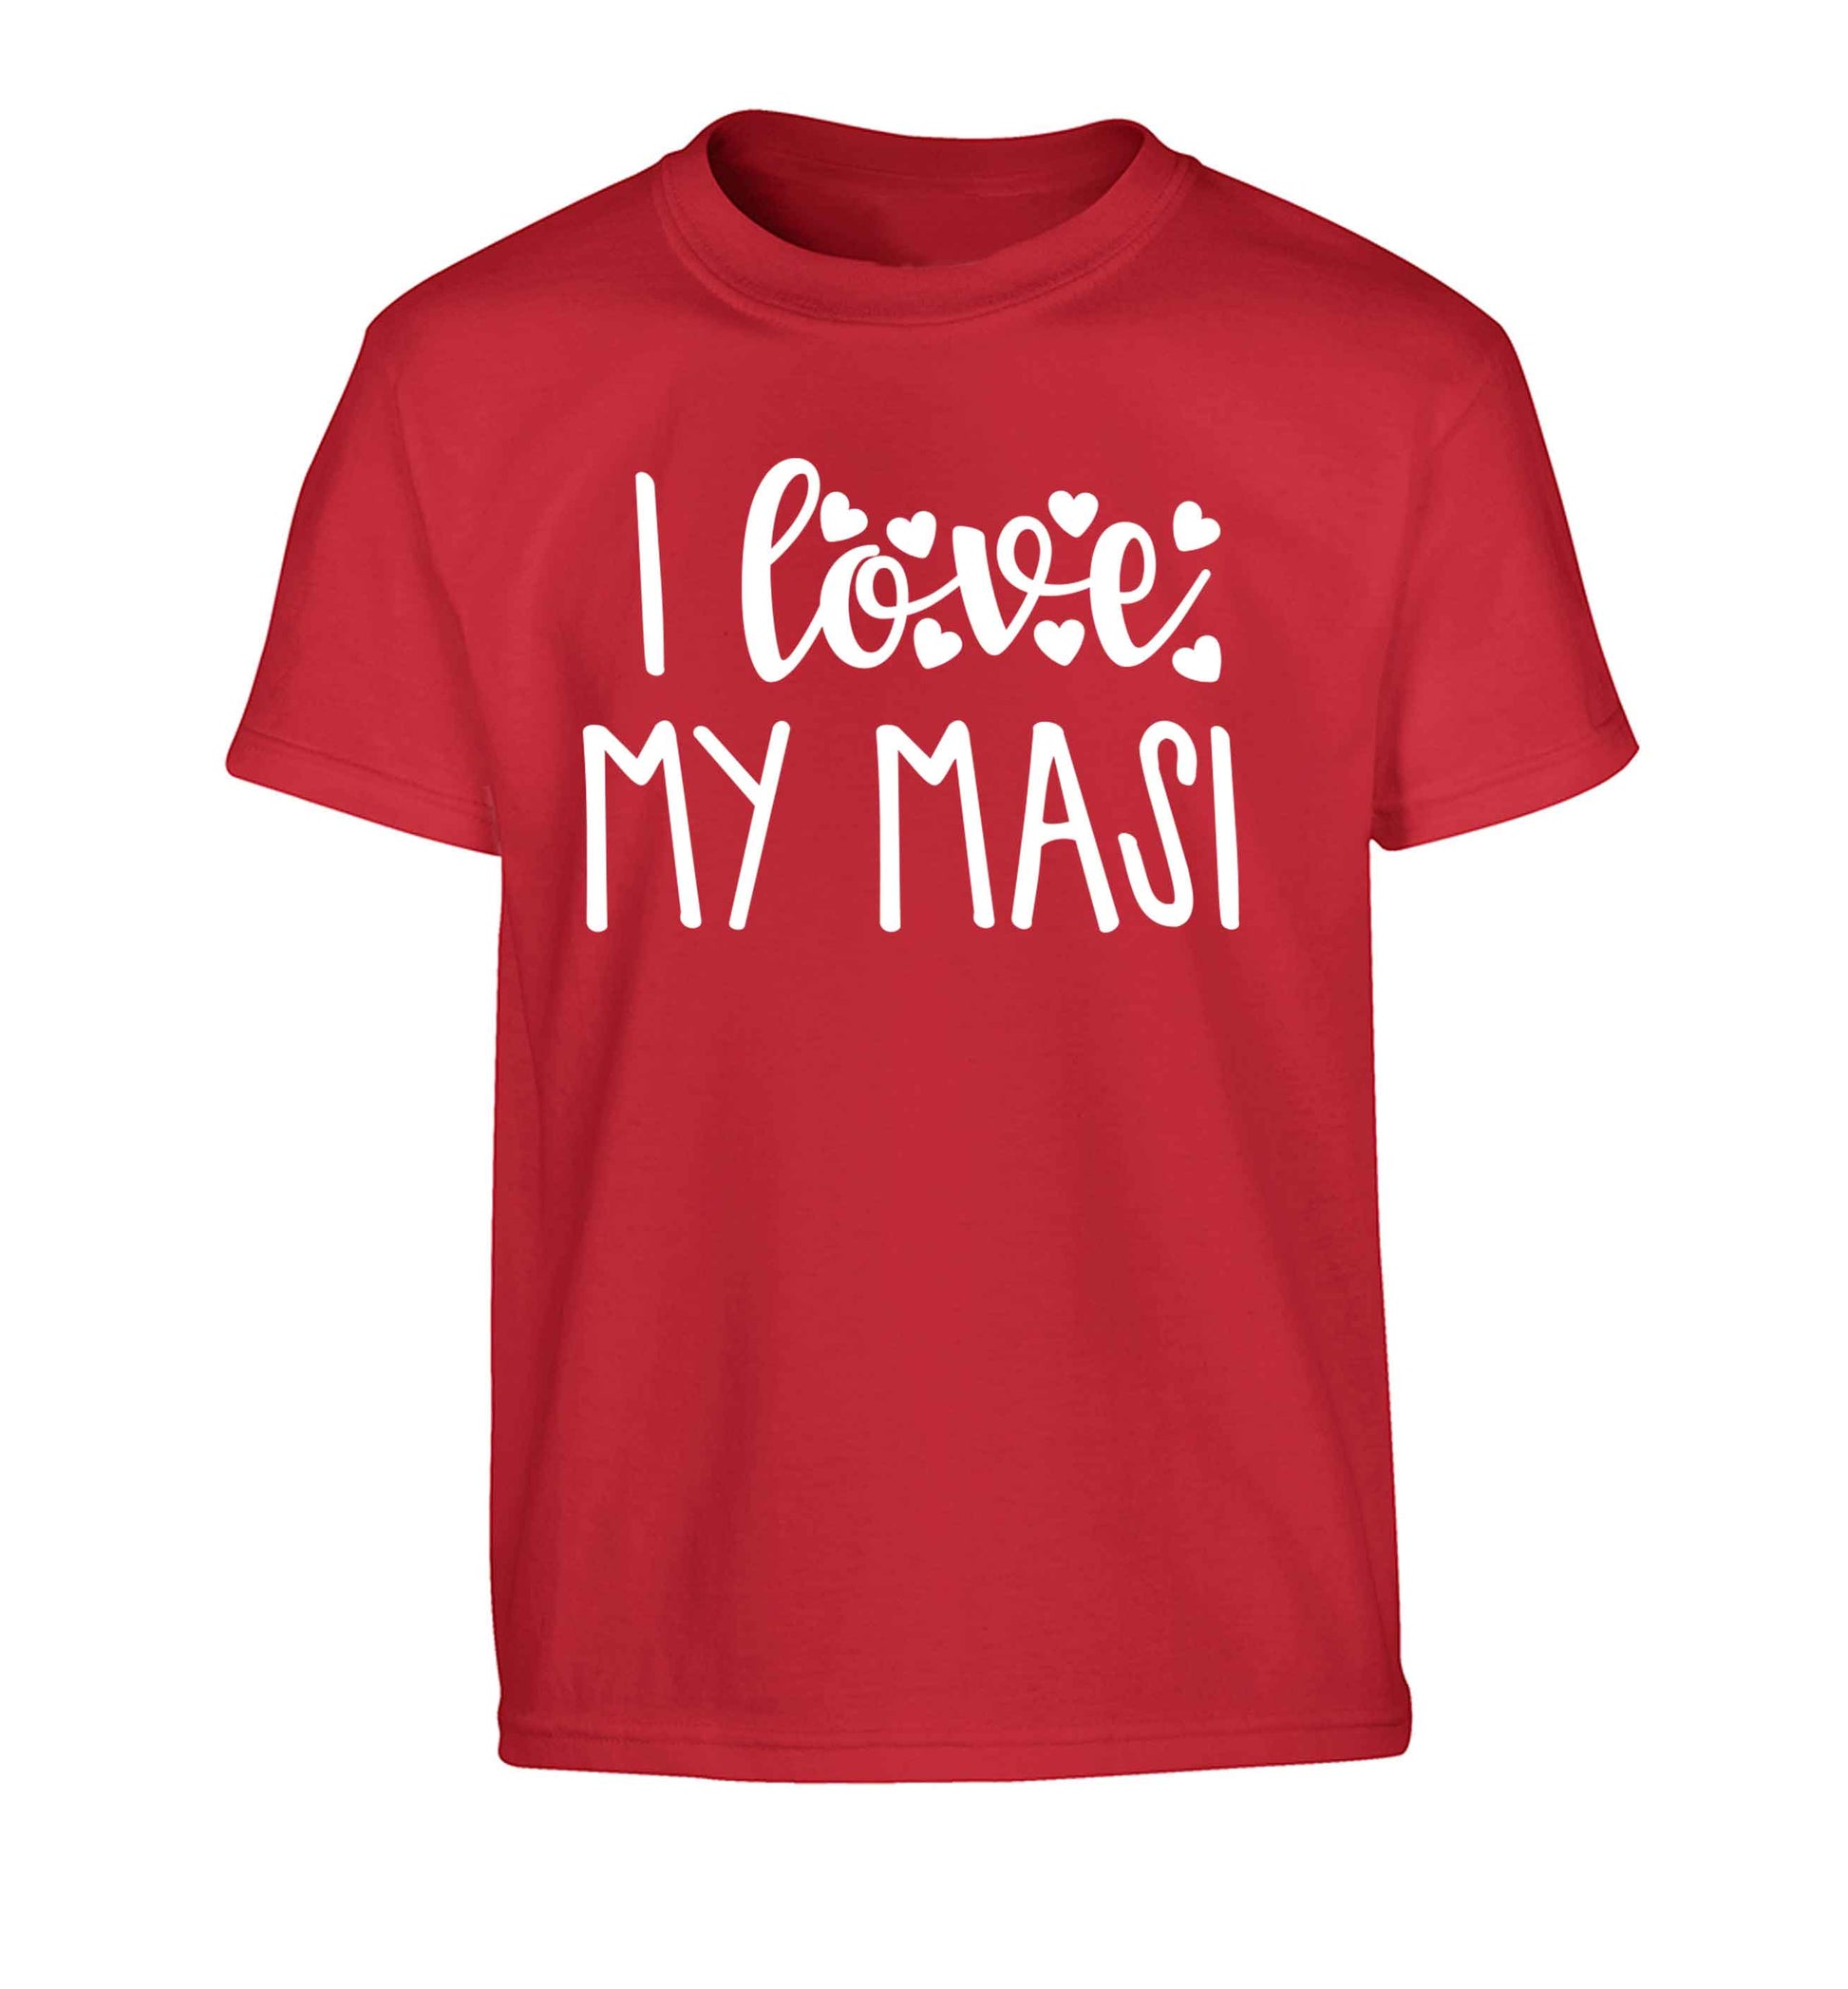 I love my masi Children's red Tshirt 12-13 Years